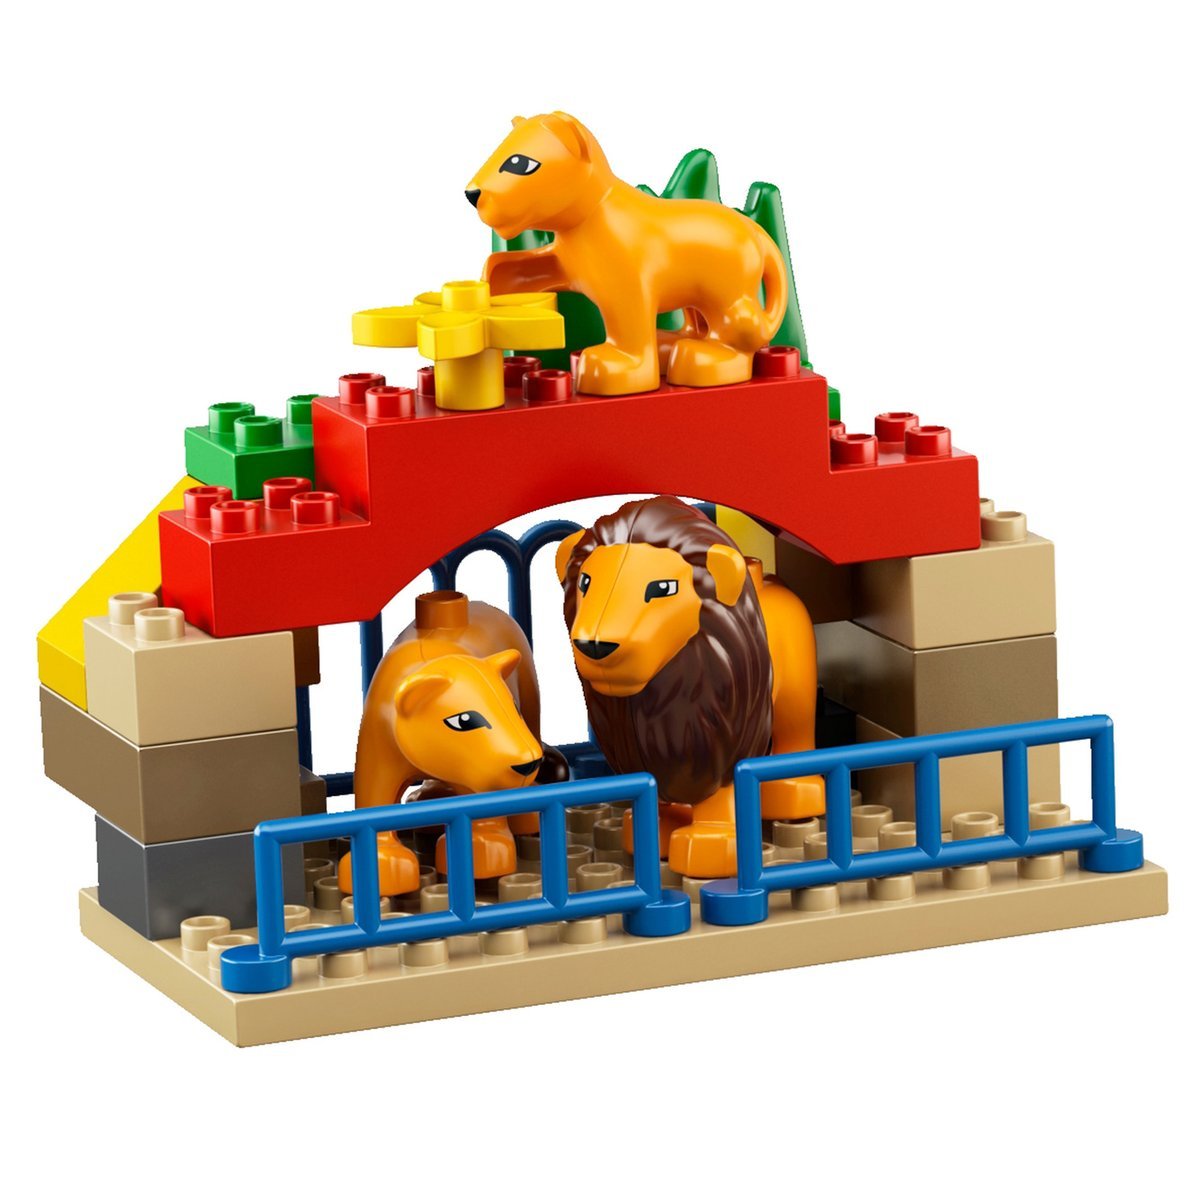 LEGO DUPLO 6157 Large City Zoo